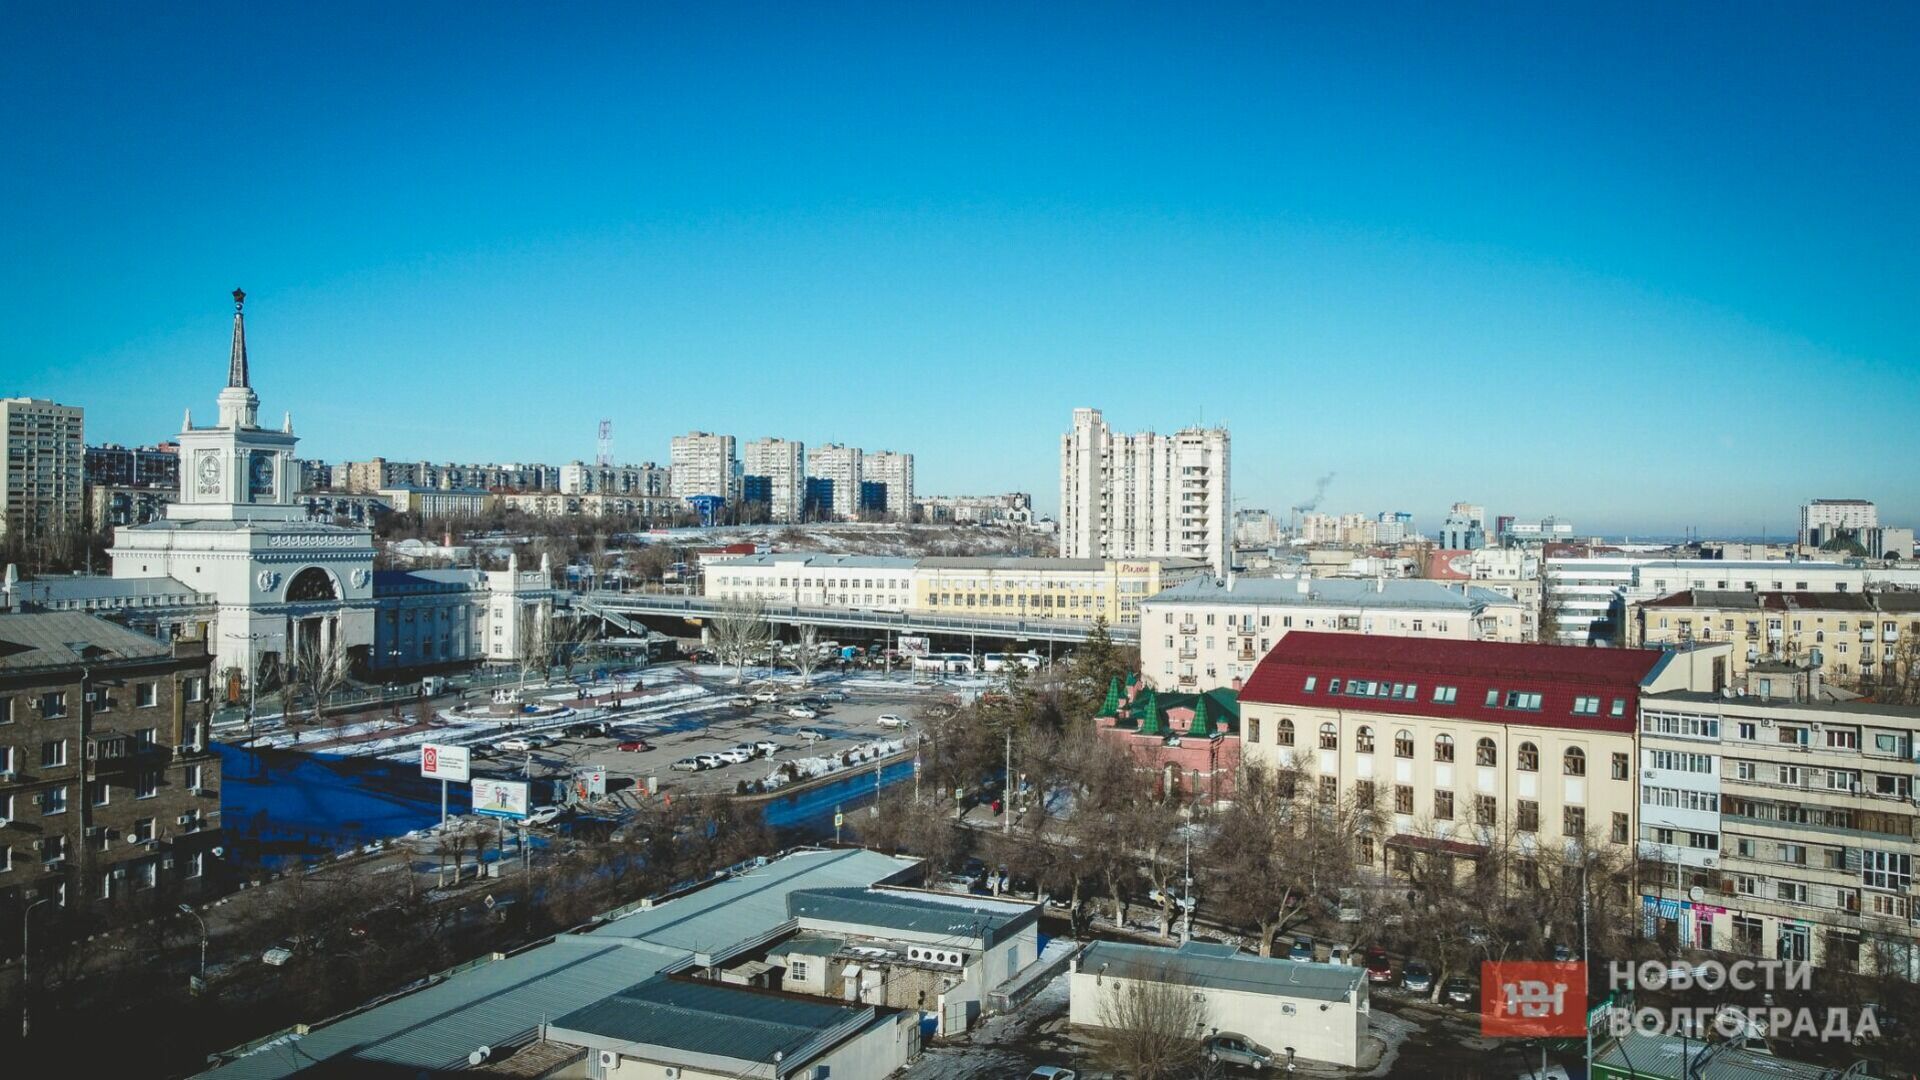 Царицынский пассаж продают за 260 миллионов рублей в Волгограде